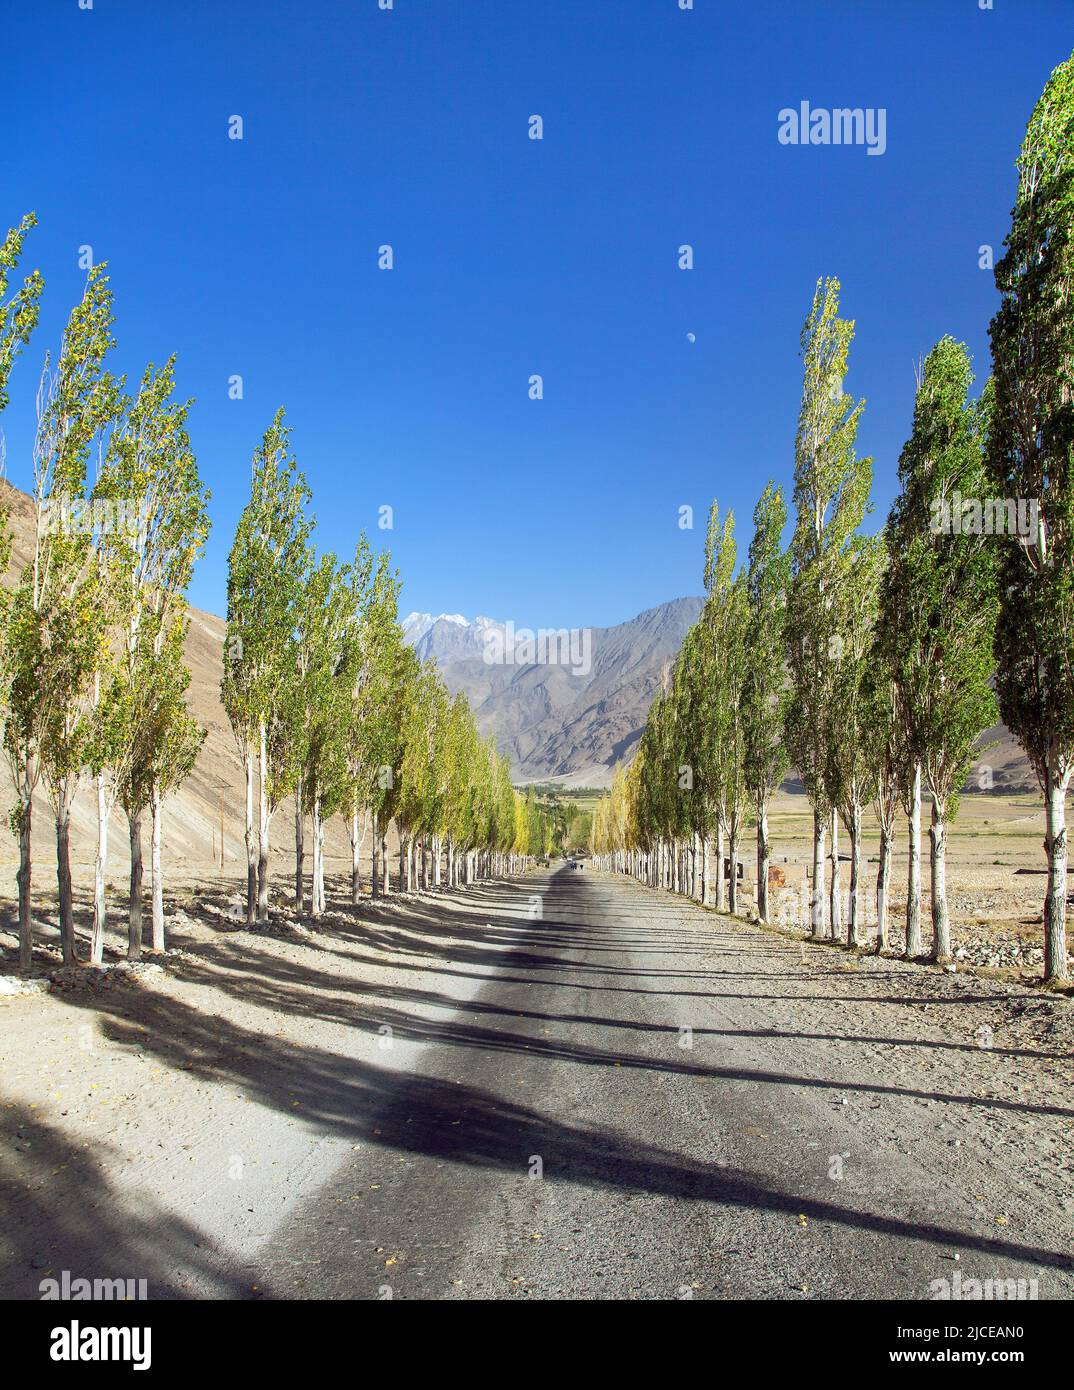 Pamir strada, strada e vicolo di alberi di pioppo e Pamir montagne, Wakhan corridoio e valle, Gorno-Badakhshan regione, Tagikistan Foto Stock